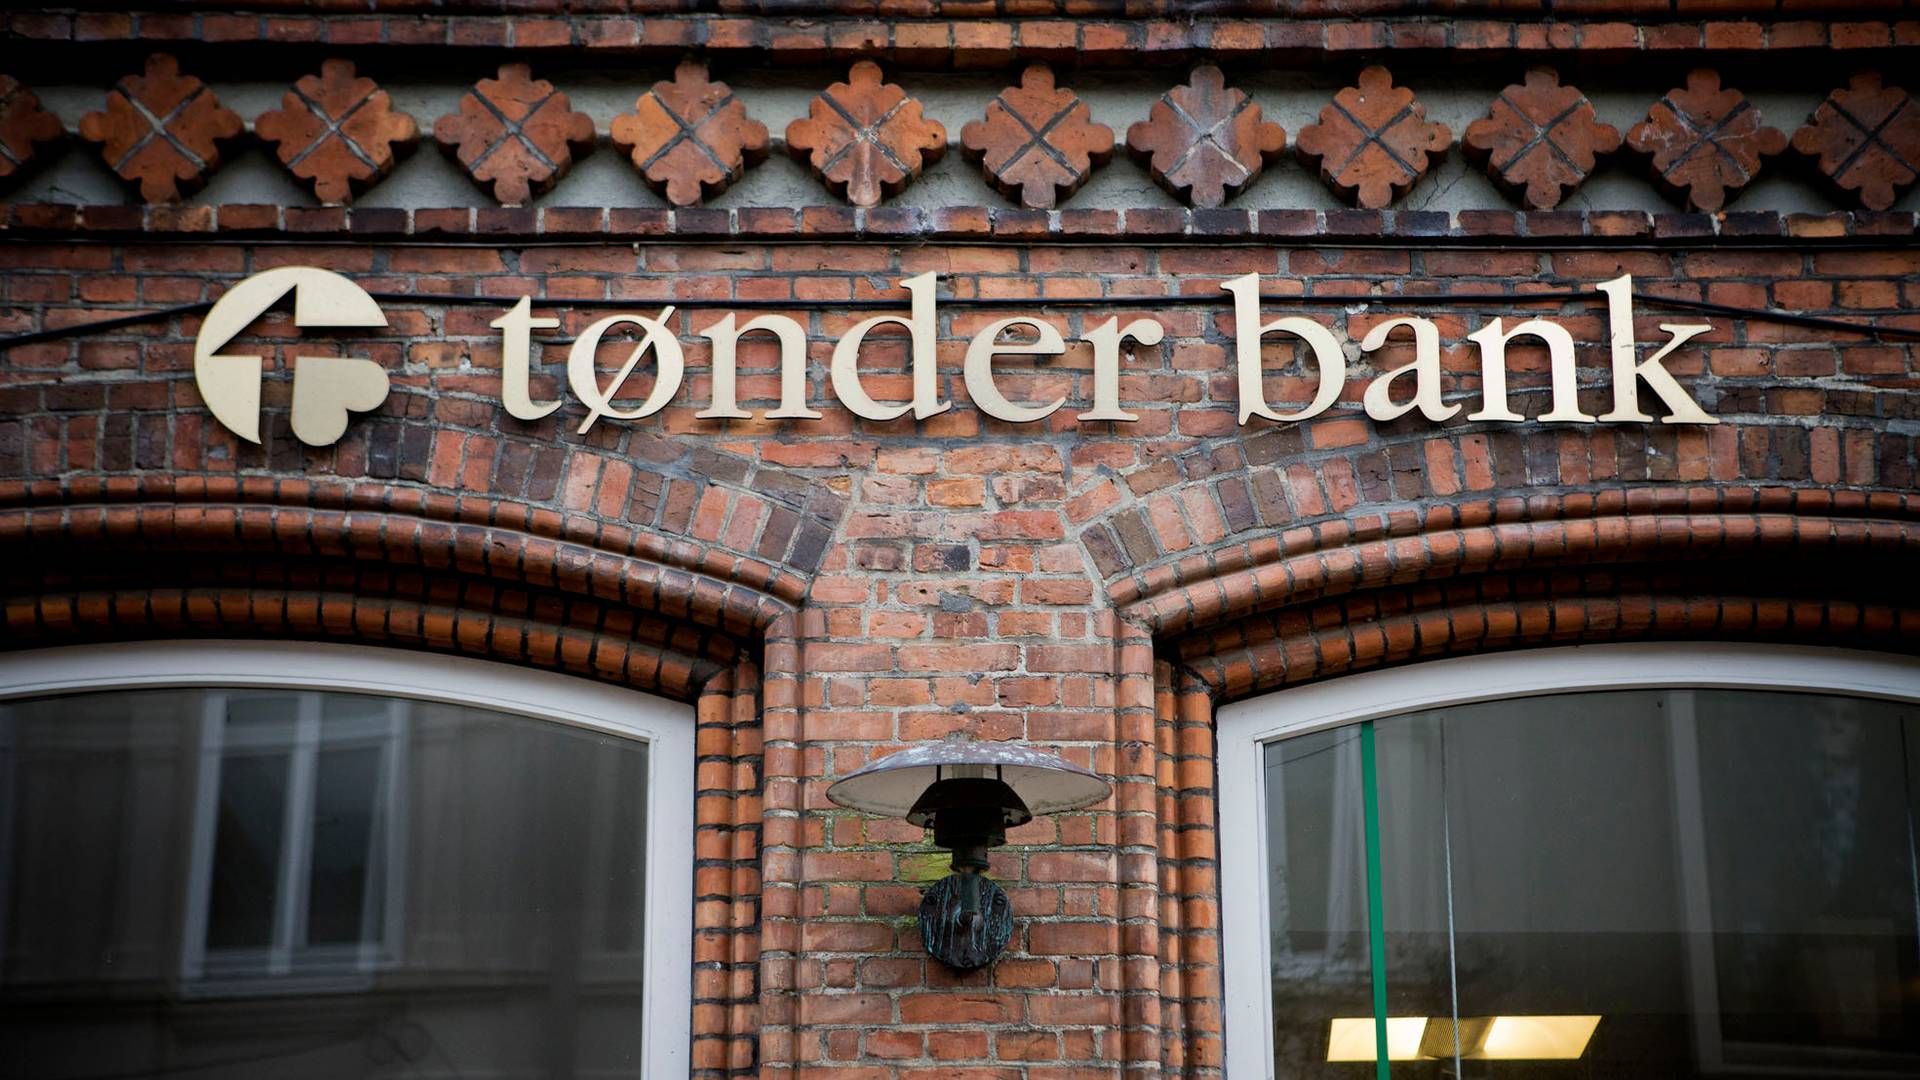 Tønder Bank indgav konkursbegæring i november 2012 og blev derefter overtaget af Sydbank. | Foto: Dalhoff Casper/Ritzau Scanpix